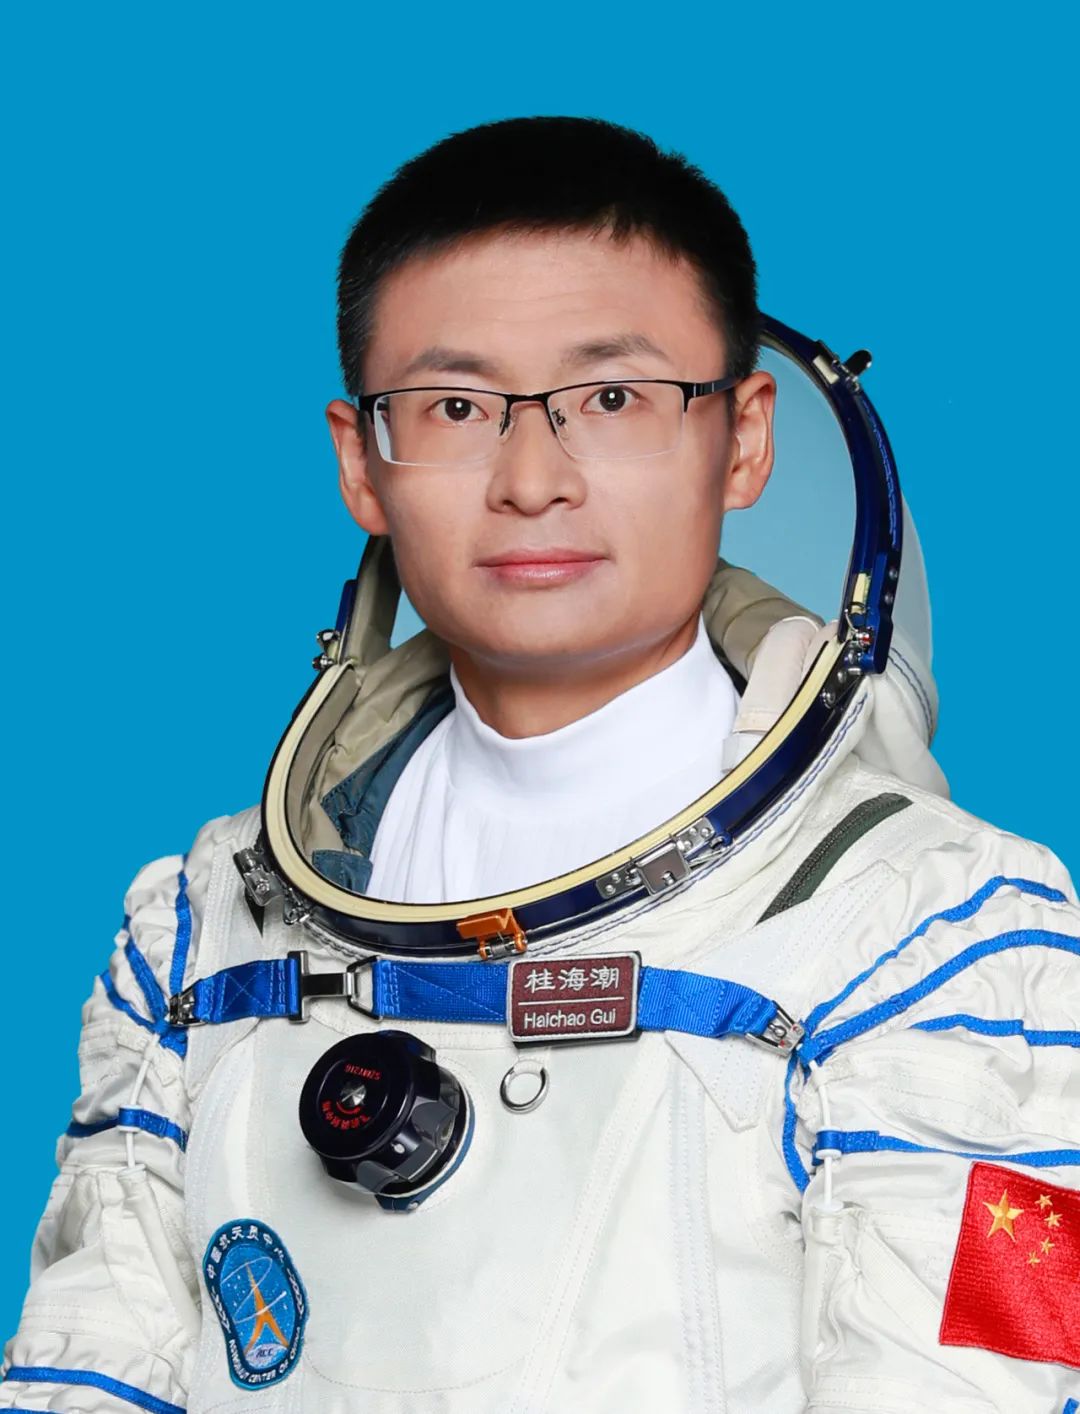 قوي هاي تشاو ..قصة أول خبير حمولة صيني يسافر الى محطة الفضاء